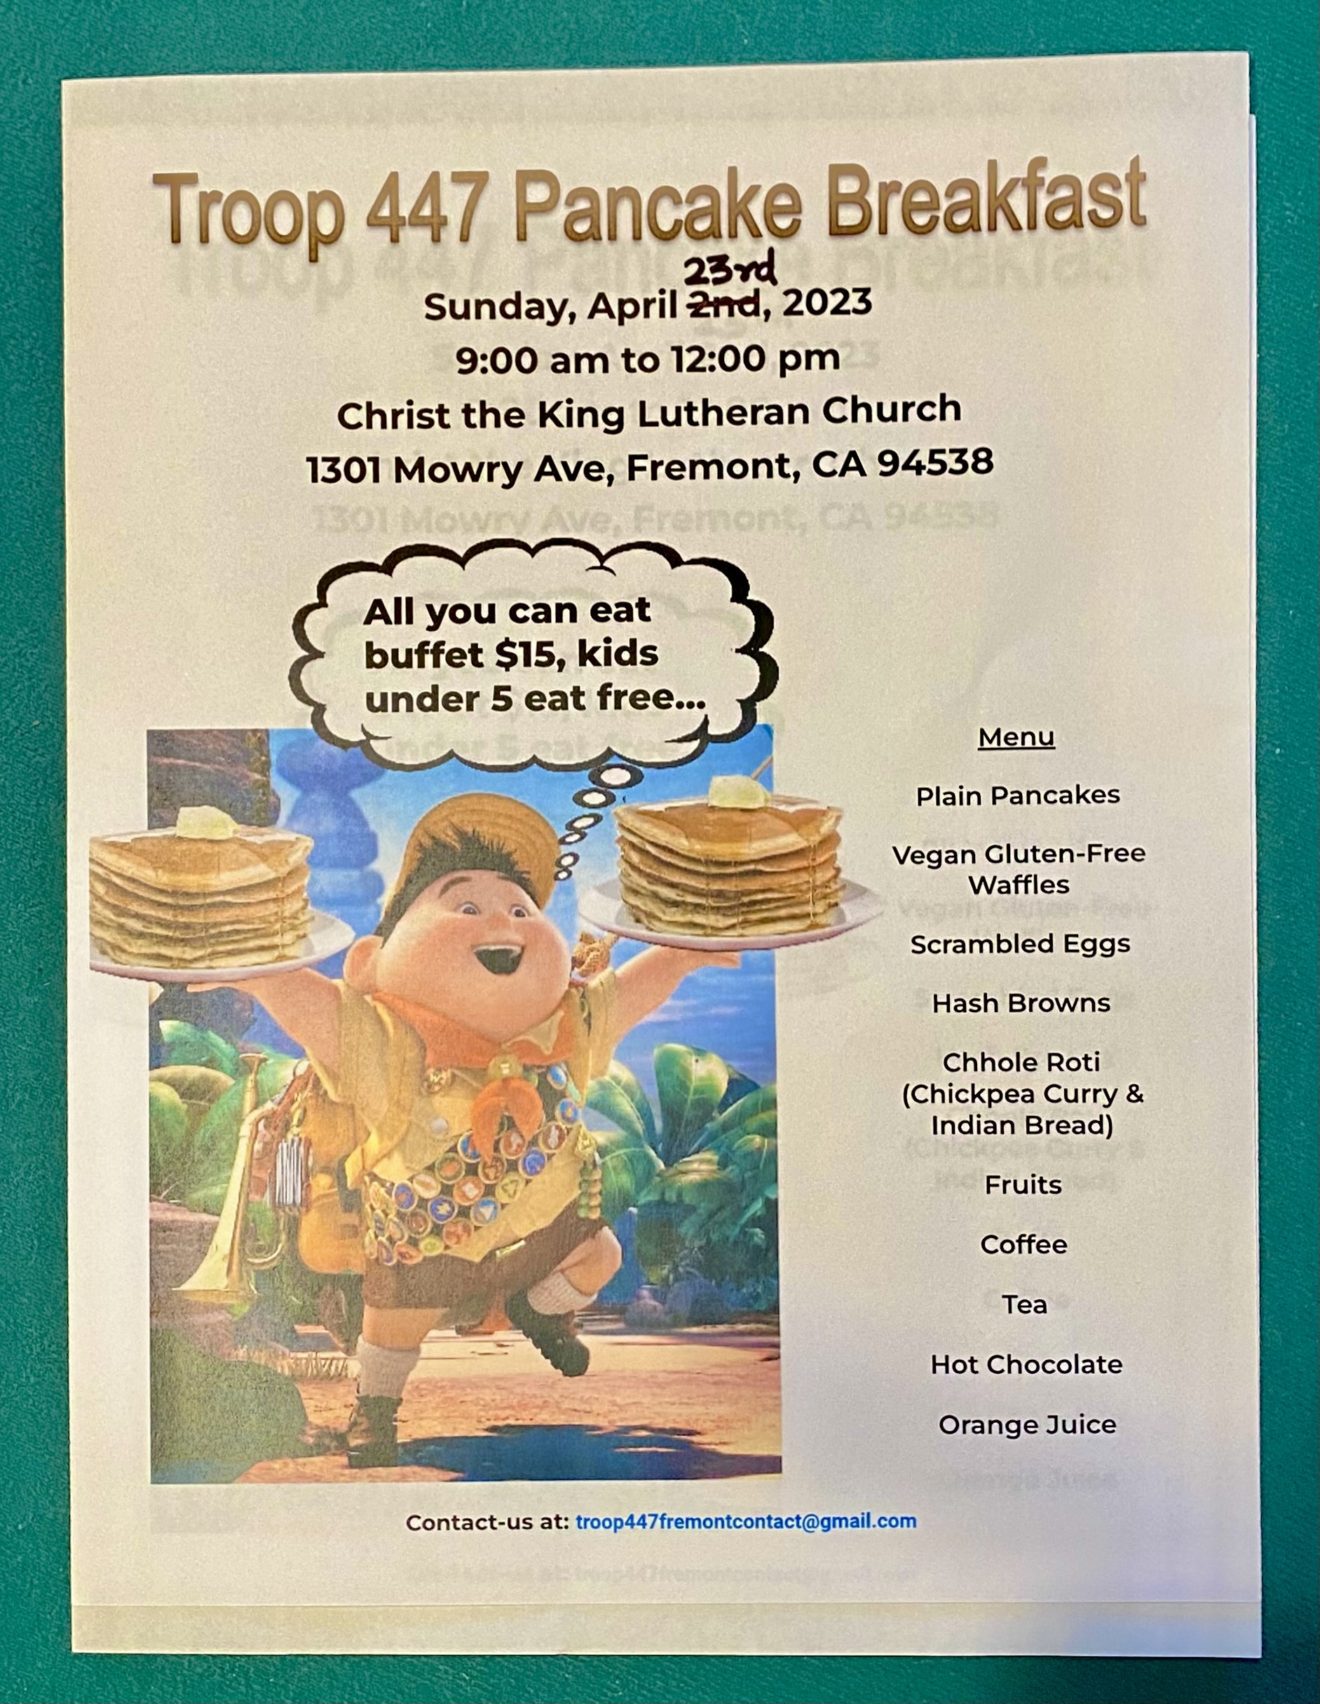 Troop 447 is having a Pancake Breakfast Fundraiser!